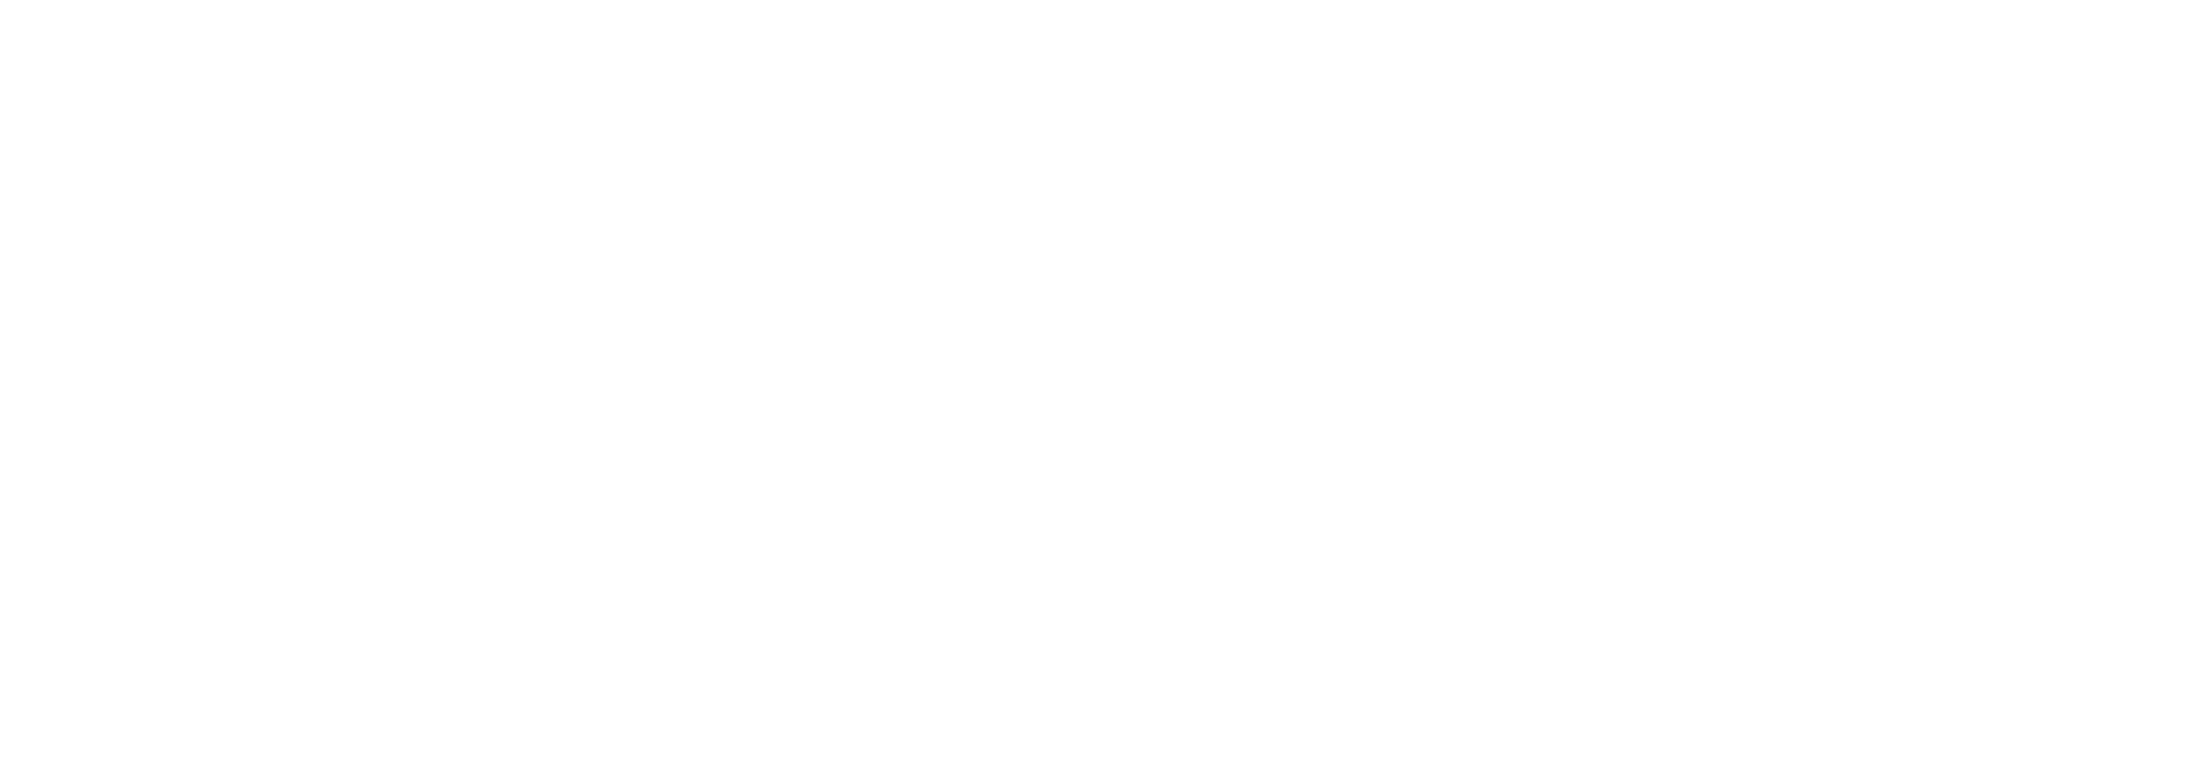 Digital Innovation Partner